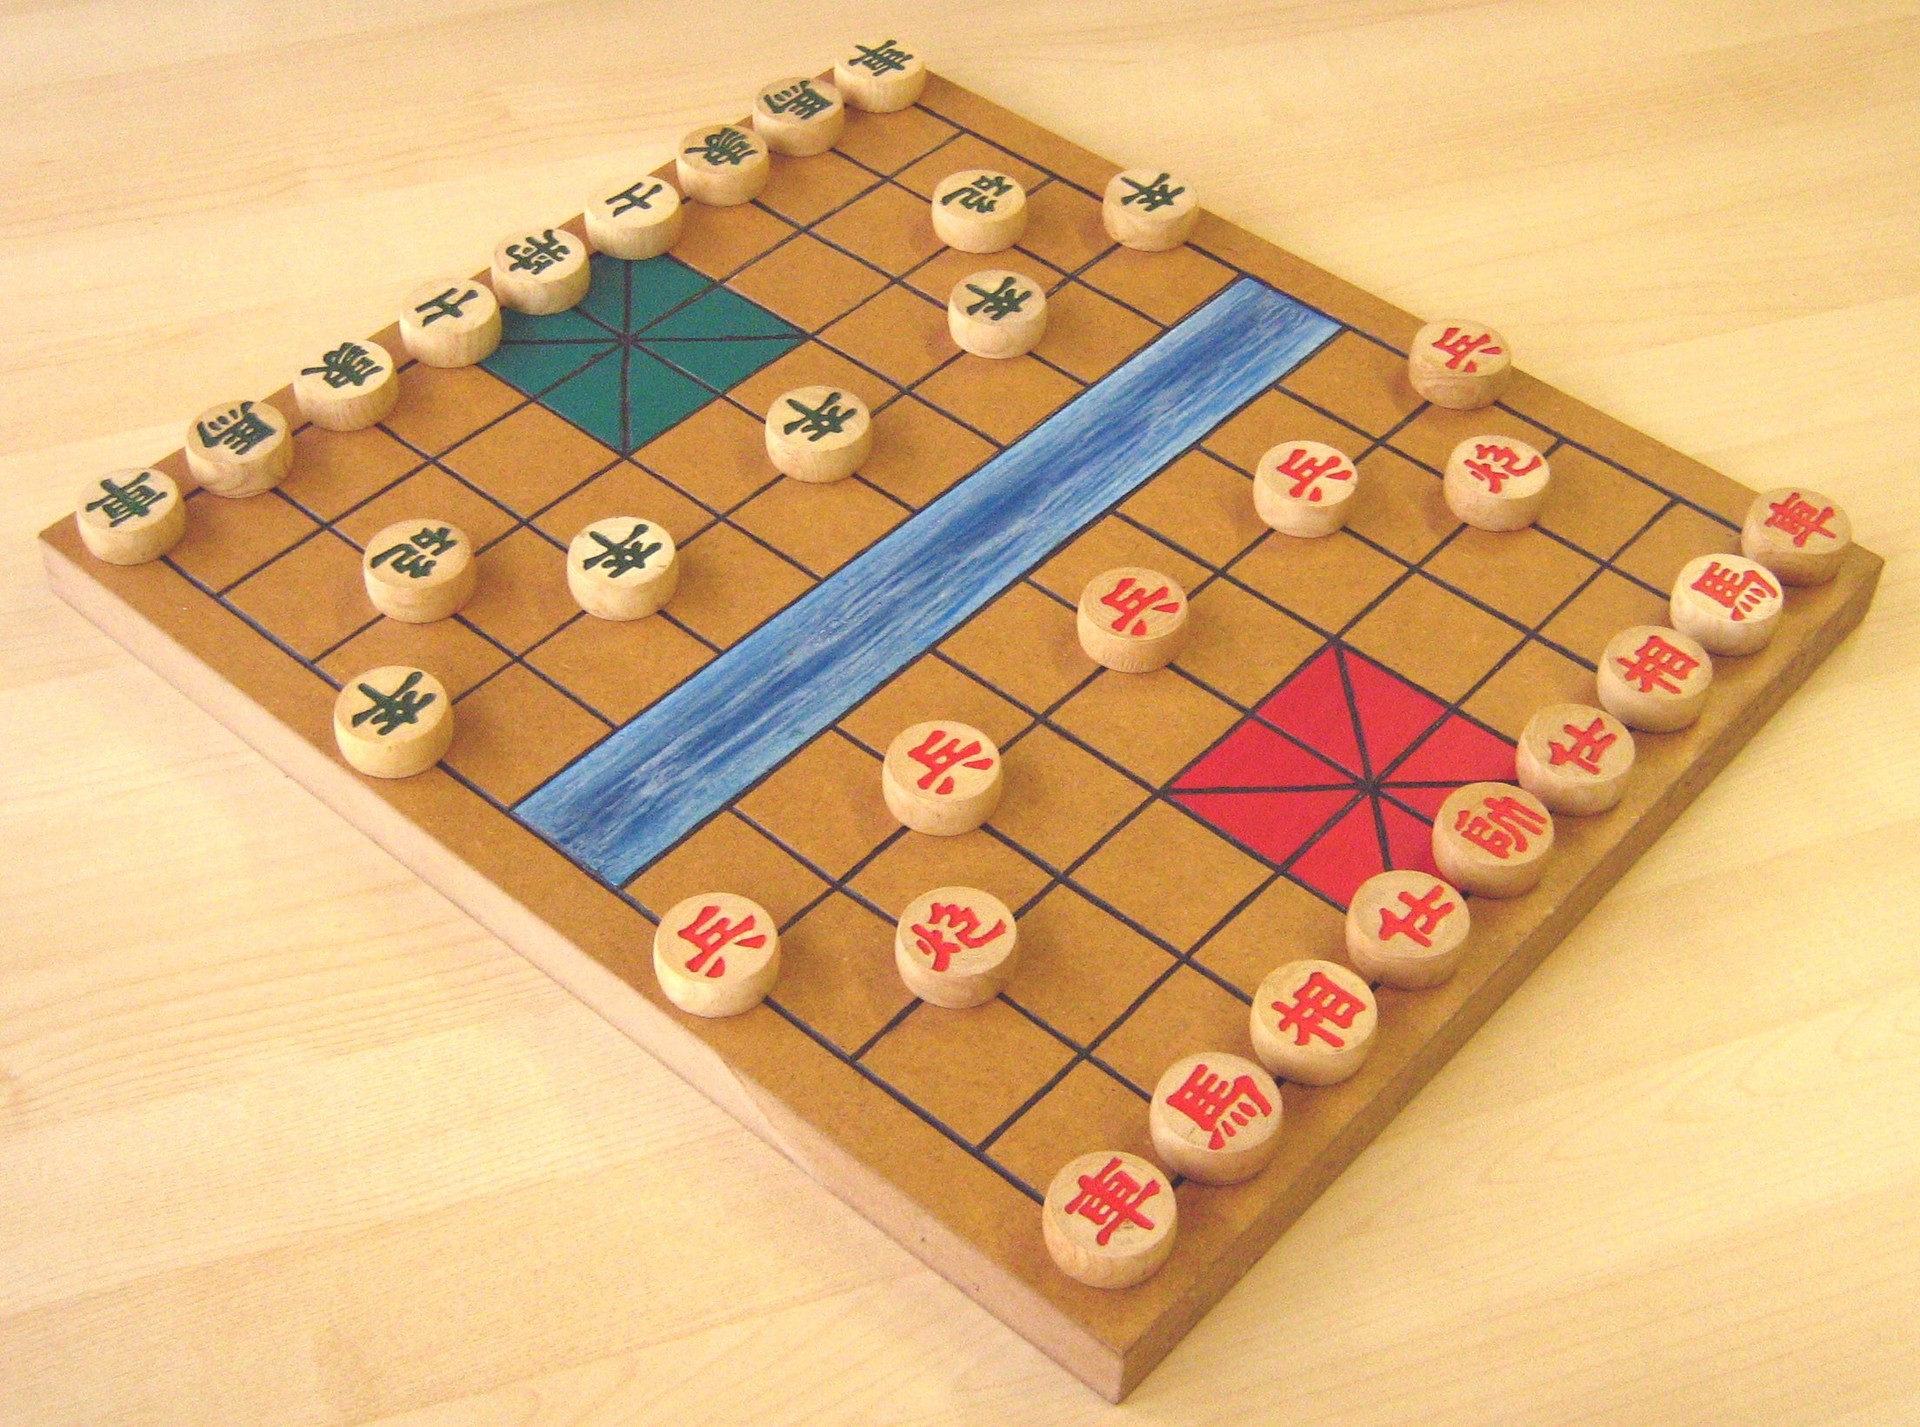 Xiangqi: Chinese chess-type game